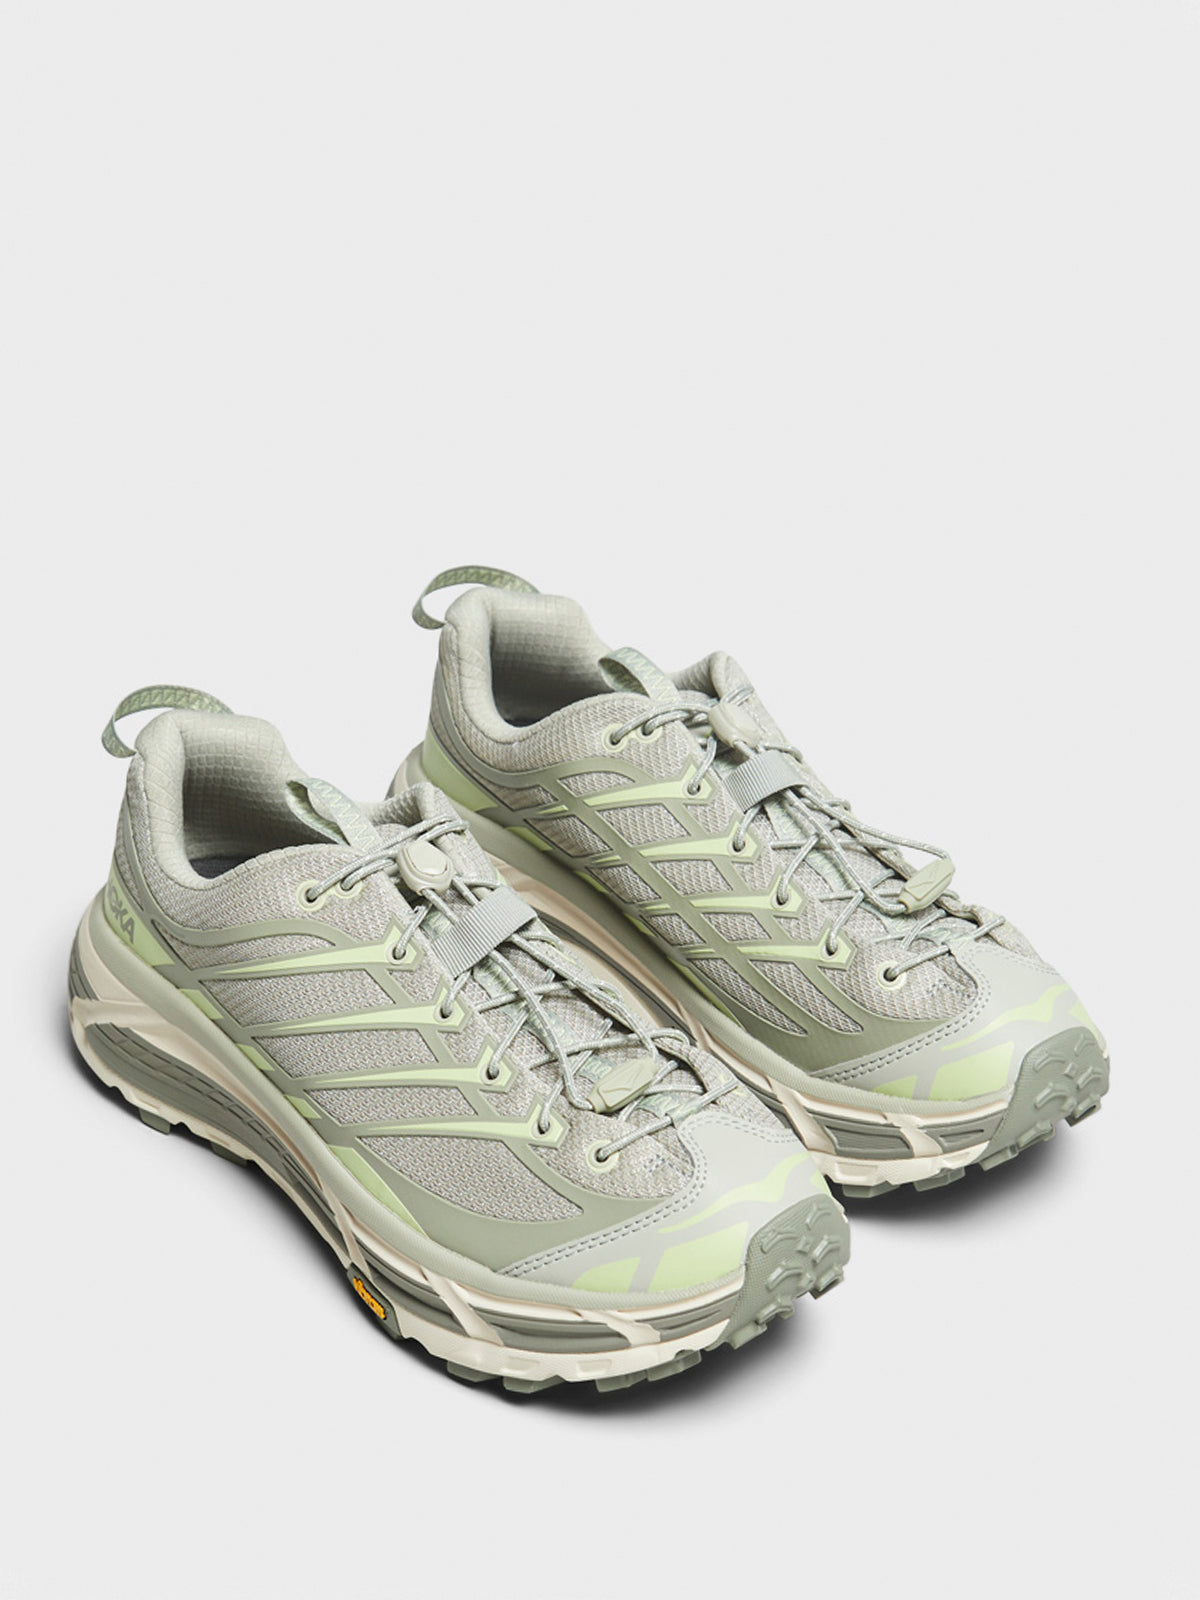 Mafate Three2 Sneakers in Grey and Green